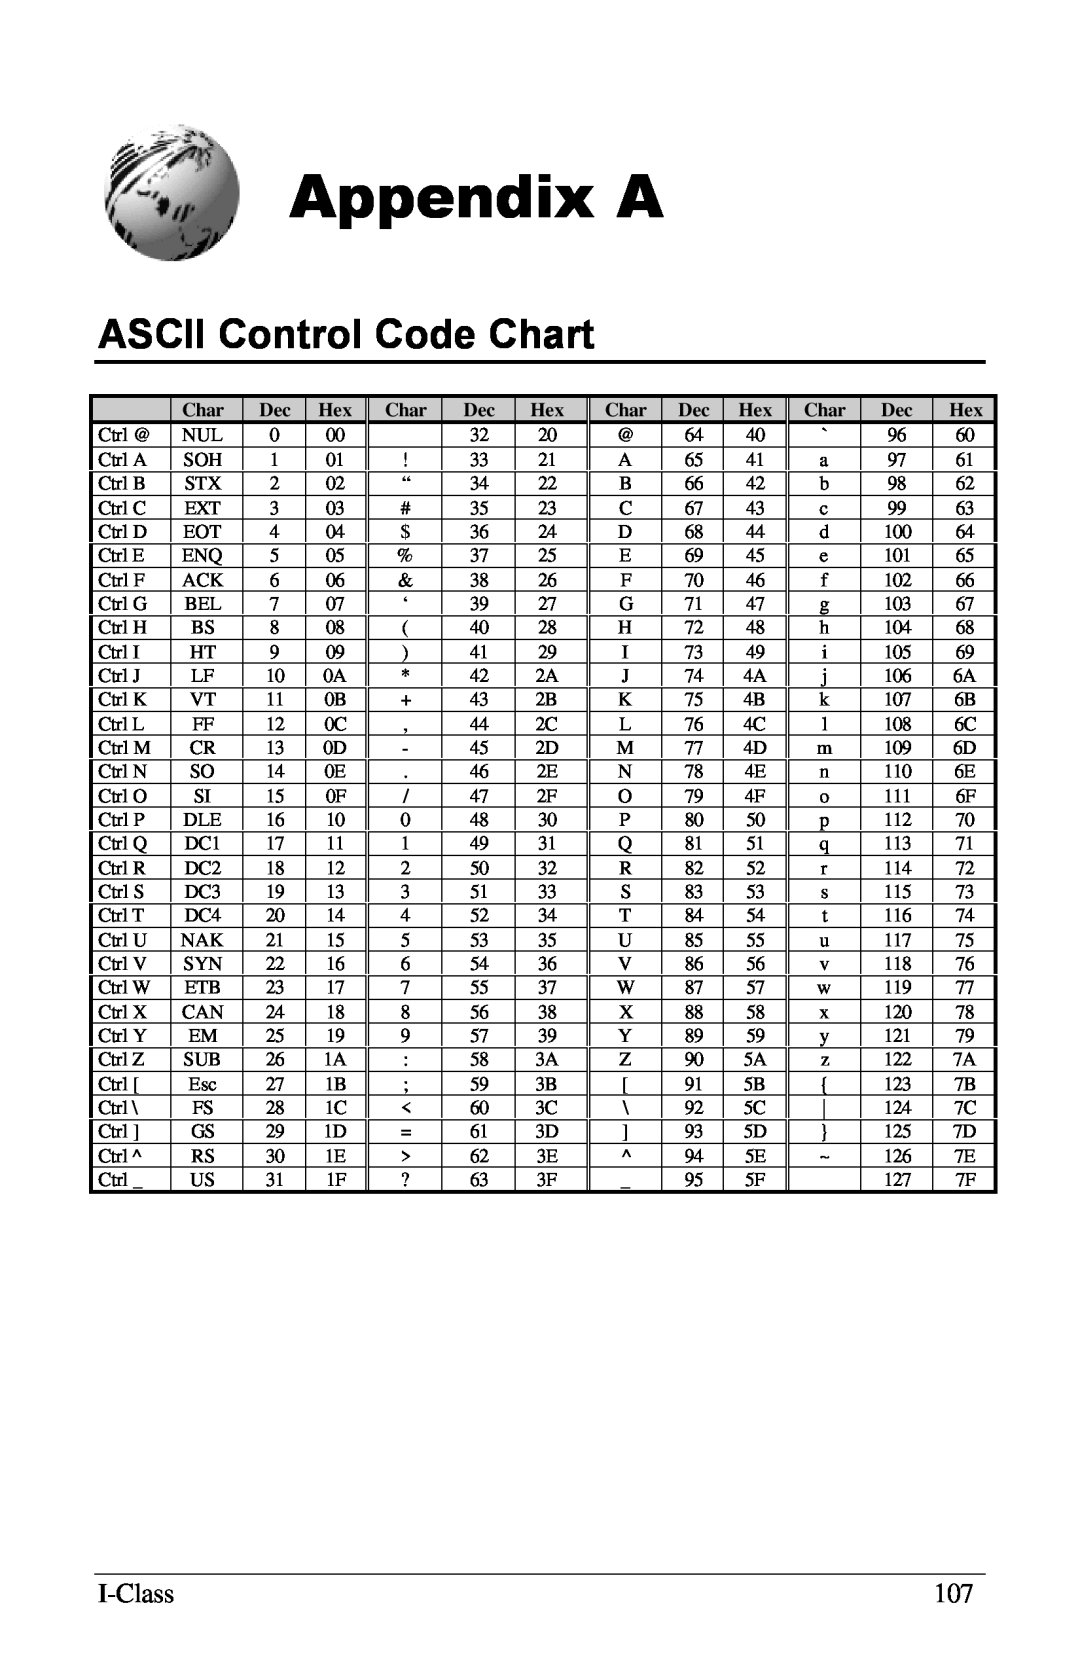 Xerox I Class manual Appendix A, ASCII Control Code Chart 